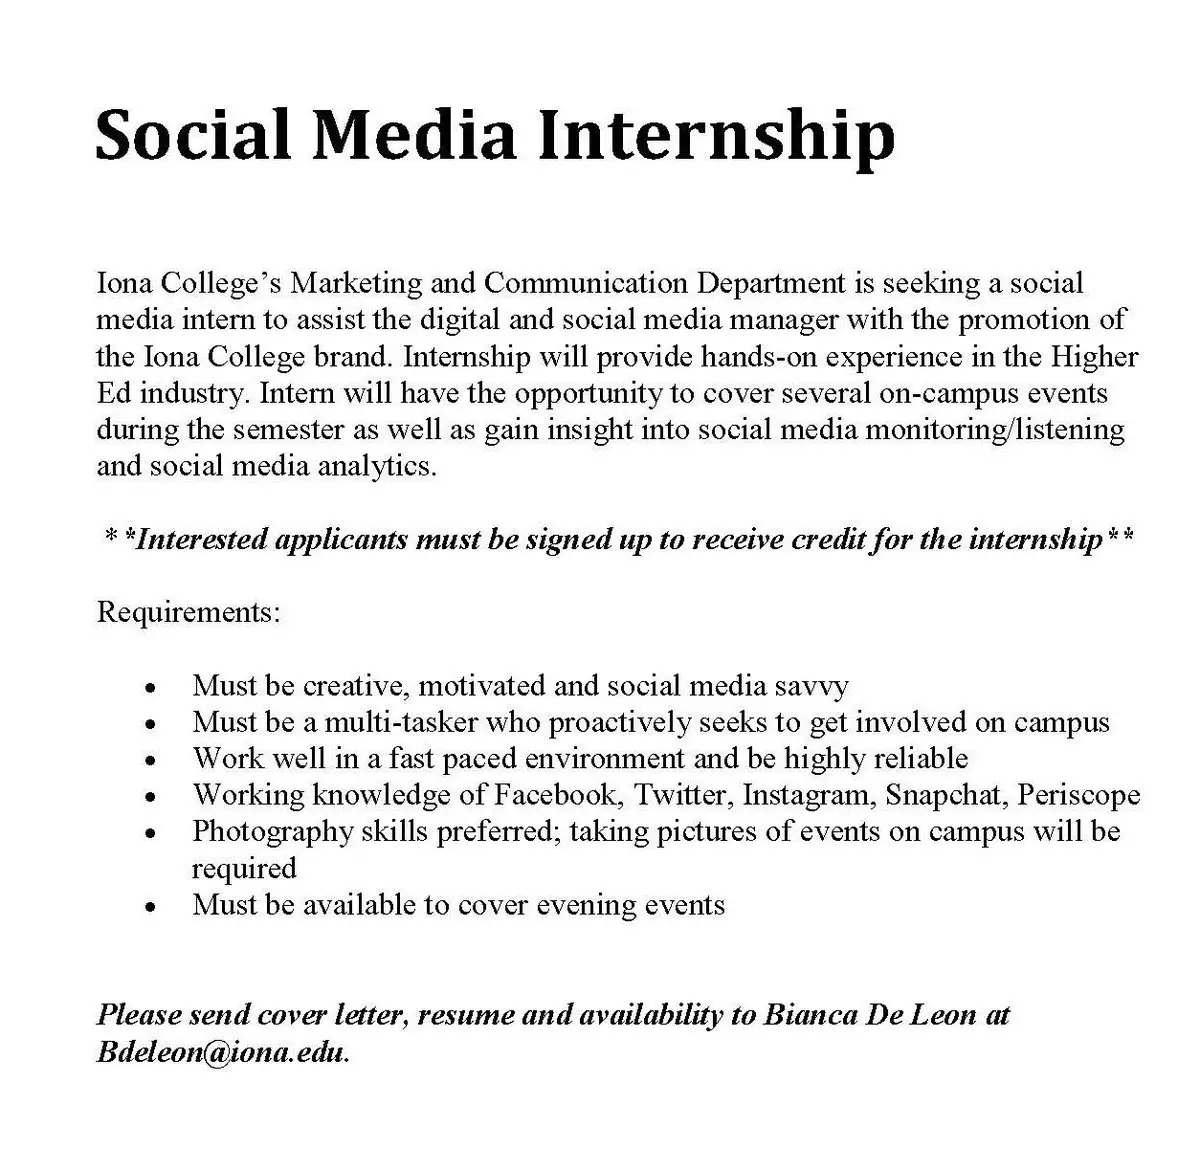 Social Media Internship Cover Letter